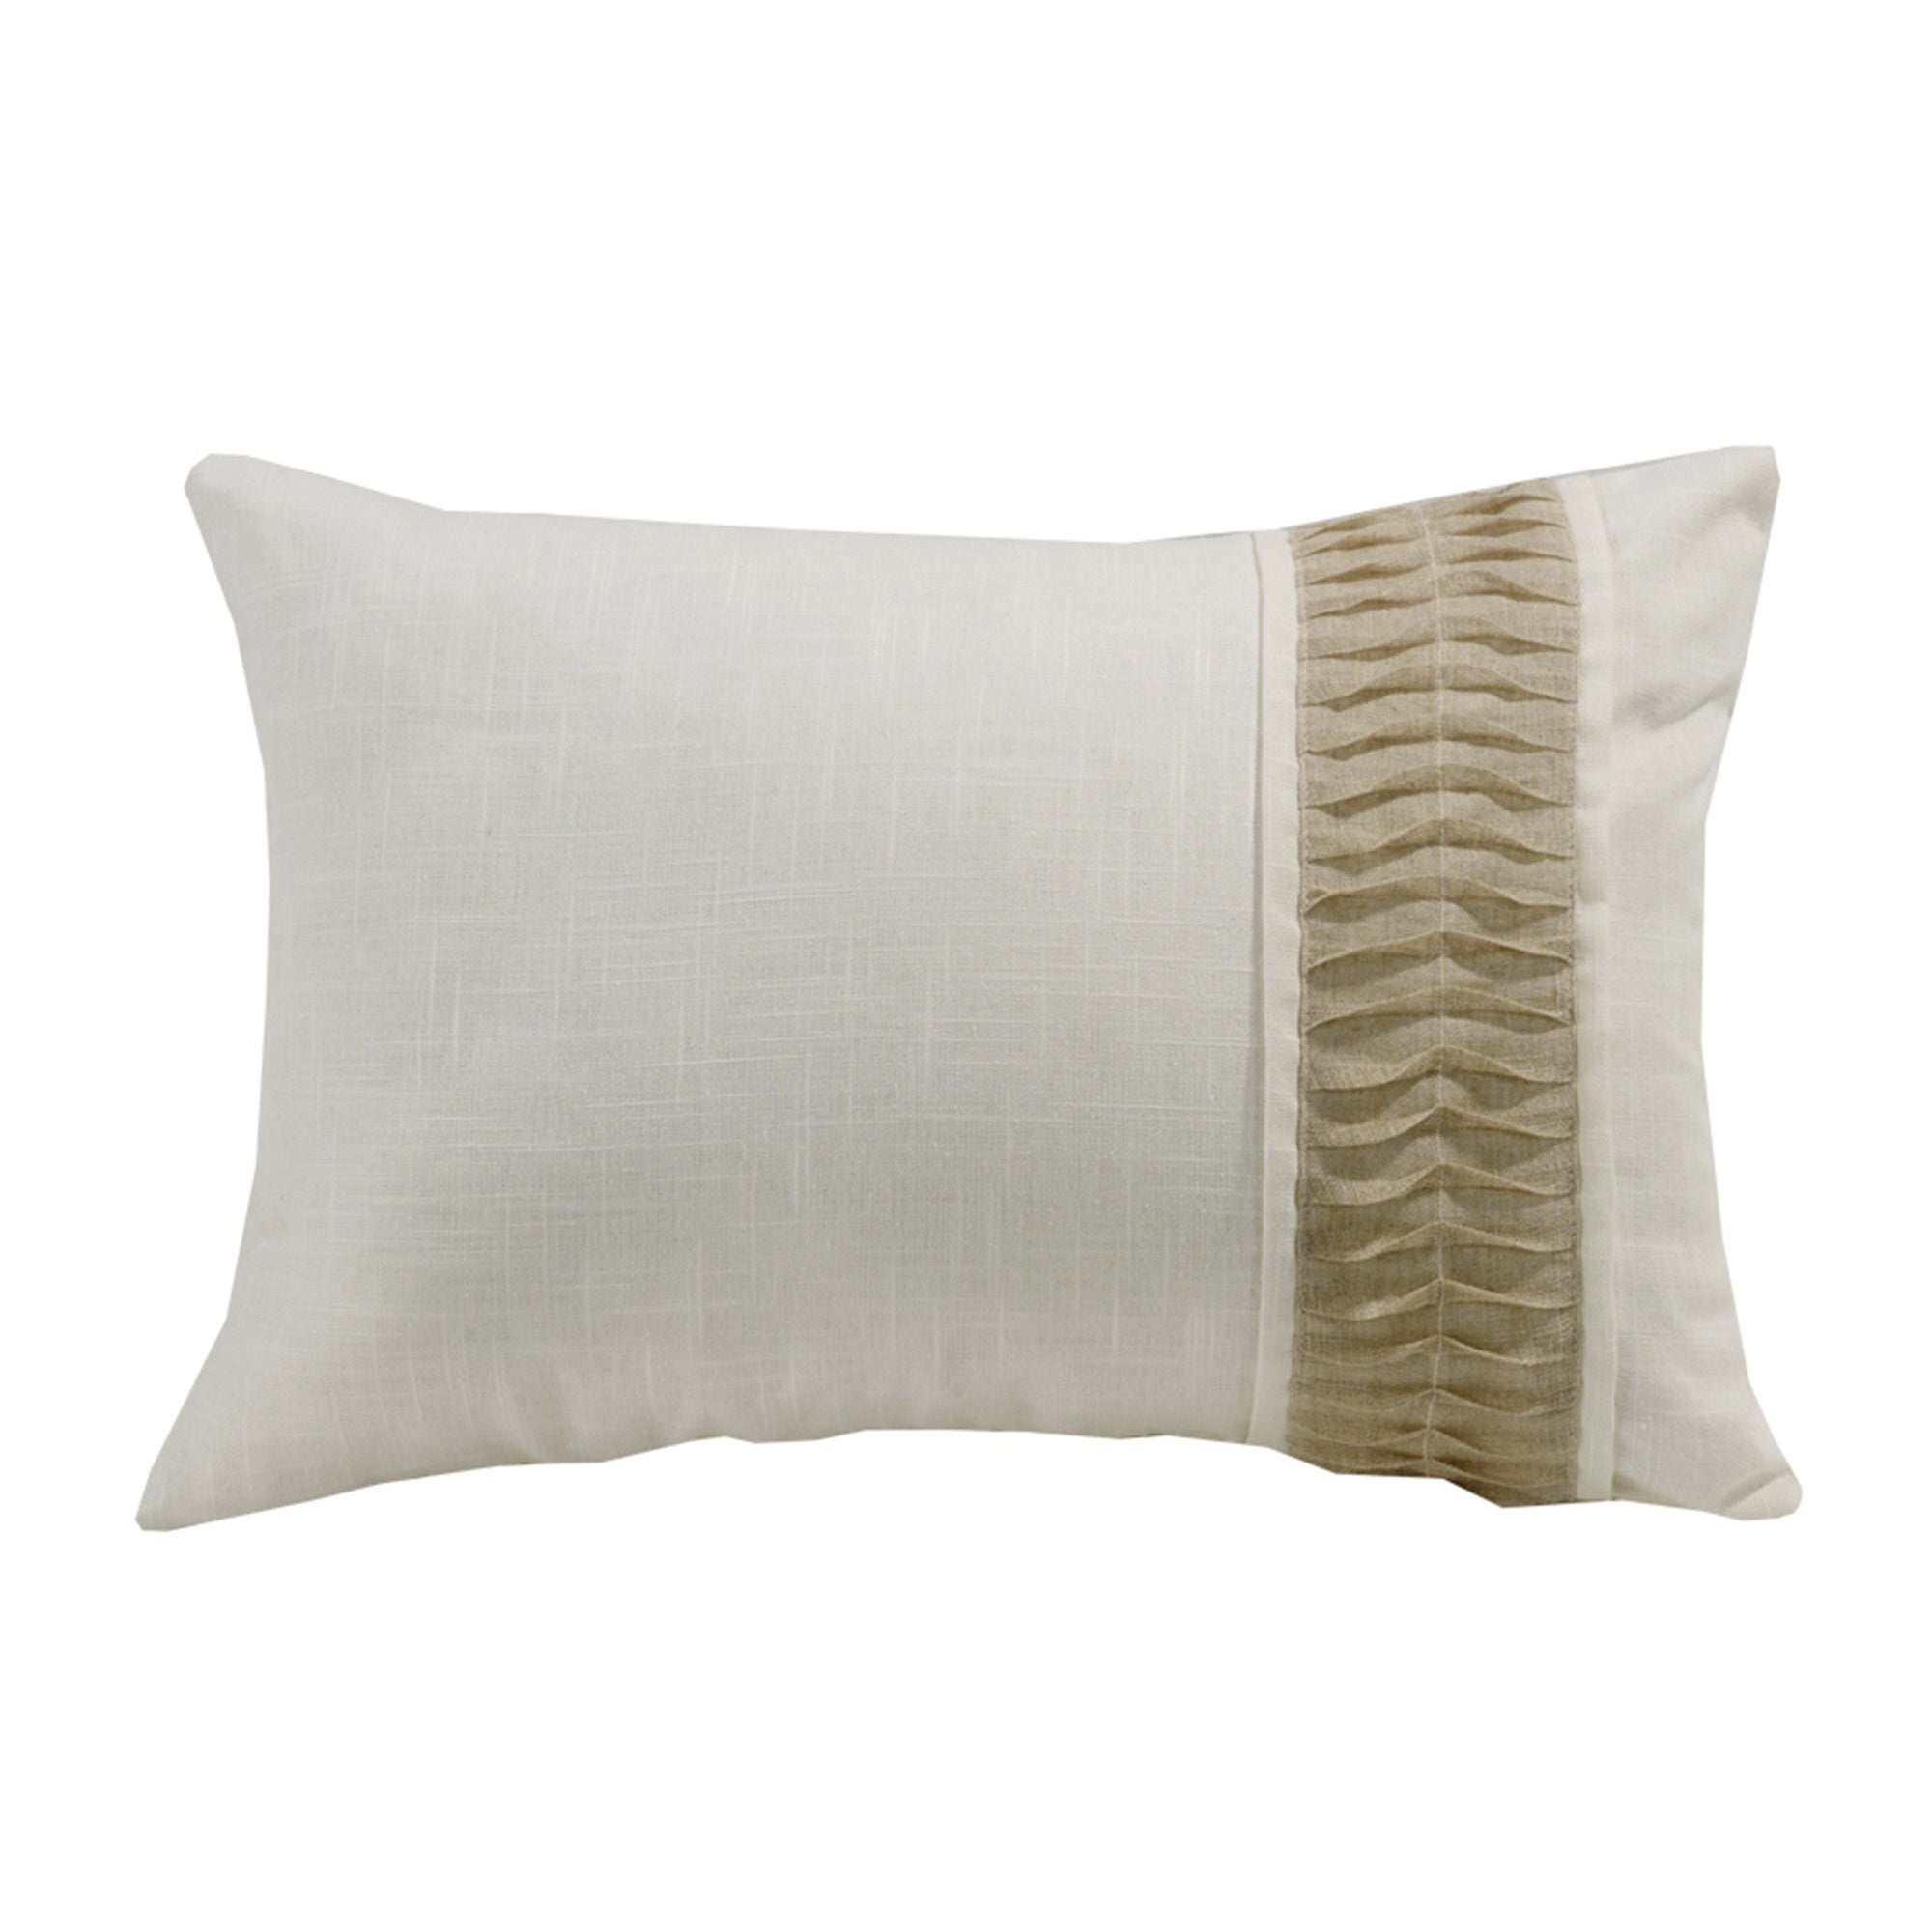 Newport White Linen Pillow w/ Ruching Detail, 16x24 Pillow